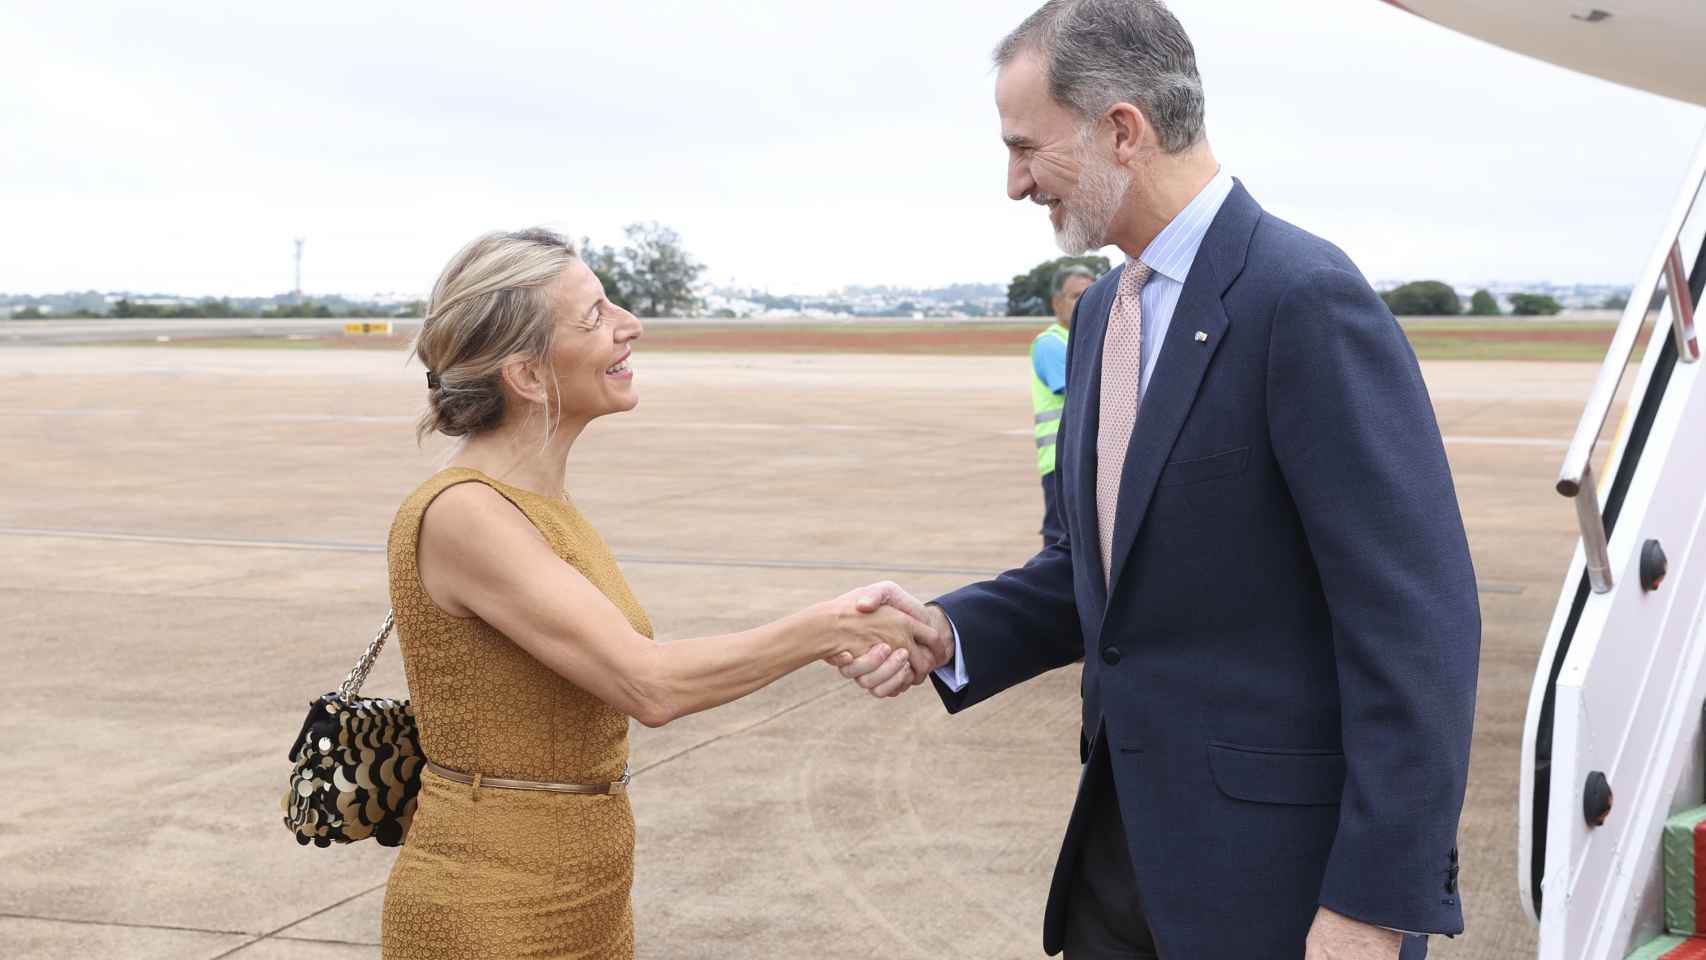 La ministra de Trabajo y vicepresidenta segunda del Gobierno, Yolanda Díaz, saluda al rey Felipe VI tras su llegada a Brasilia, donde ambos participarán en la toma de posesión de Lula da Silva como presidente de Brasil.